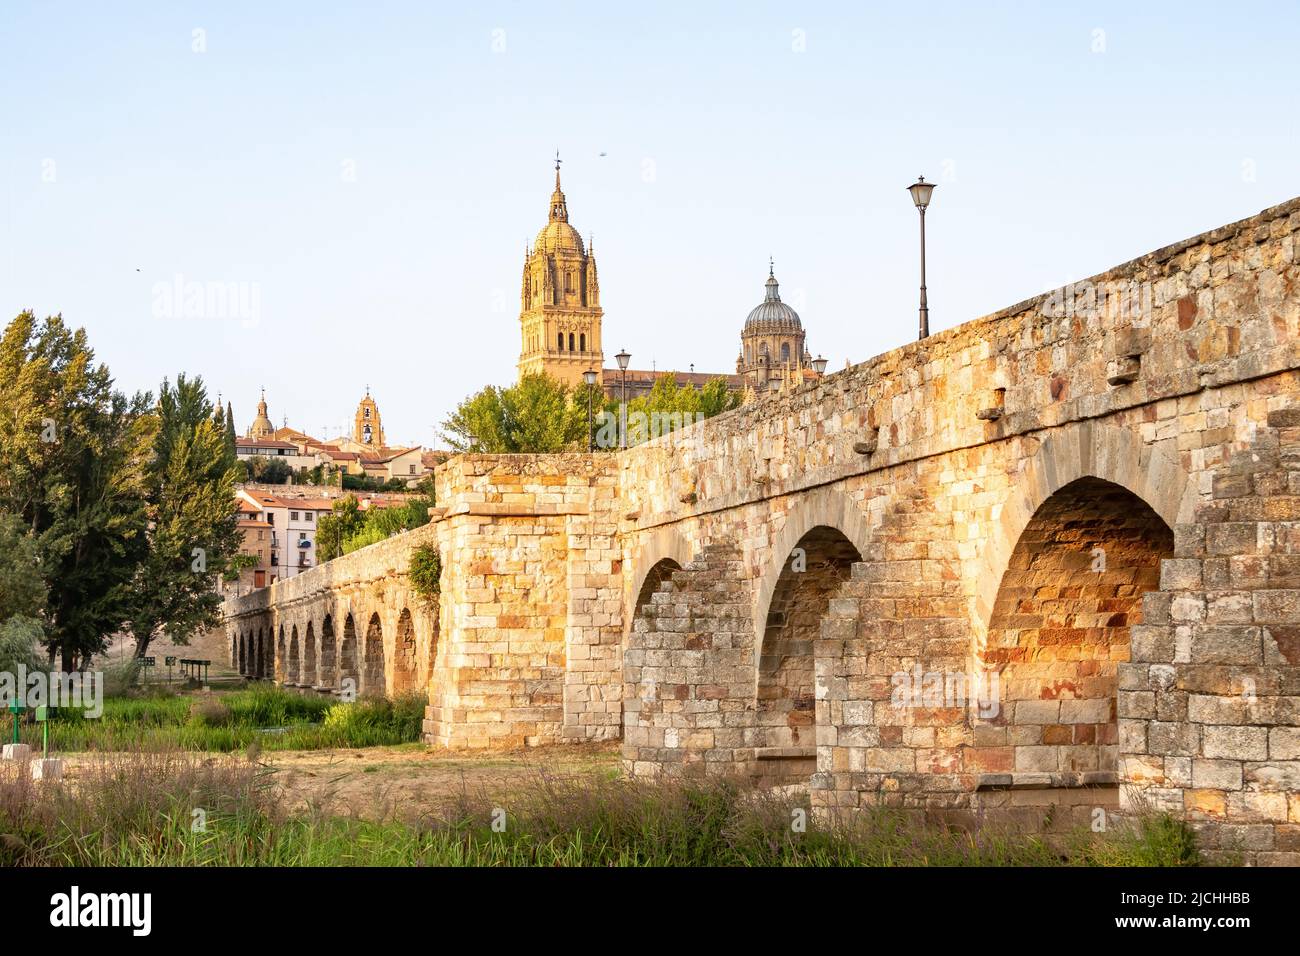 El Puente romano de Salamanca, también conocido como Puente Mayor del río Tormes, es un puente romano que cruza los Tormes Foto de stock